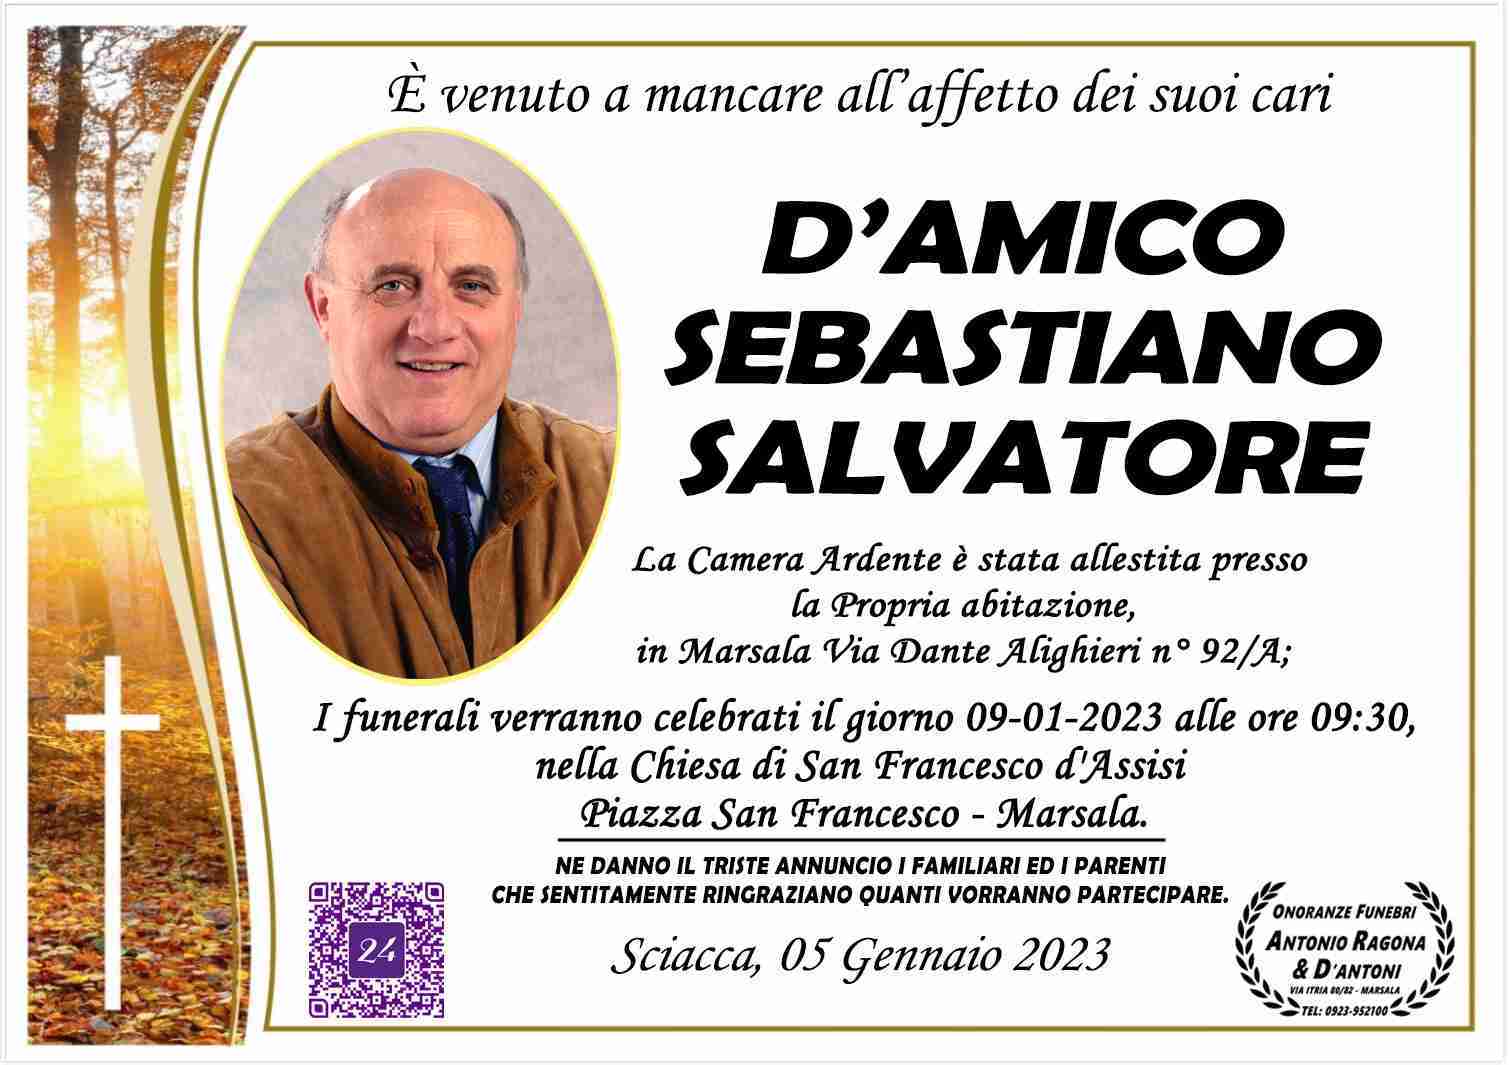 Sebastiano Salvatore D'Amico